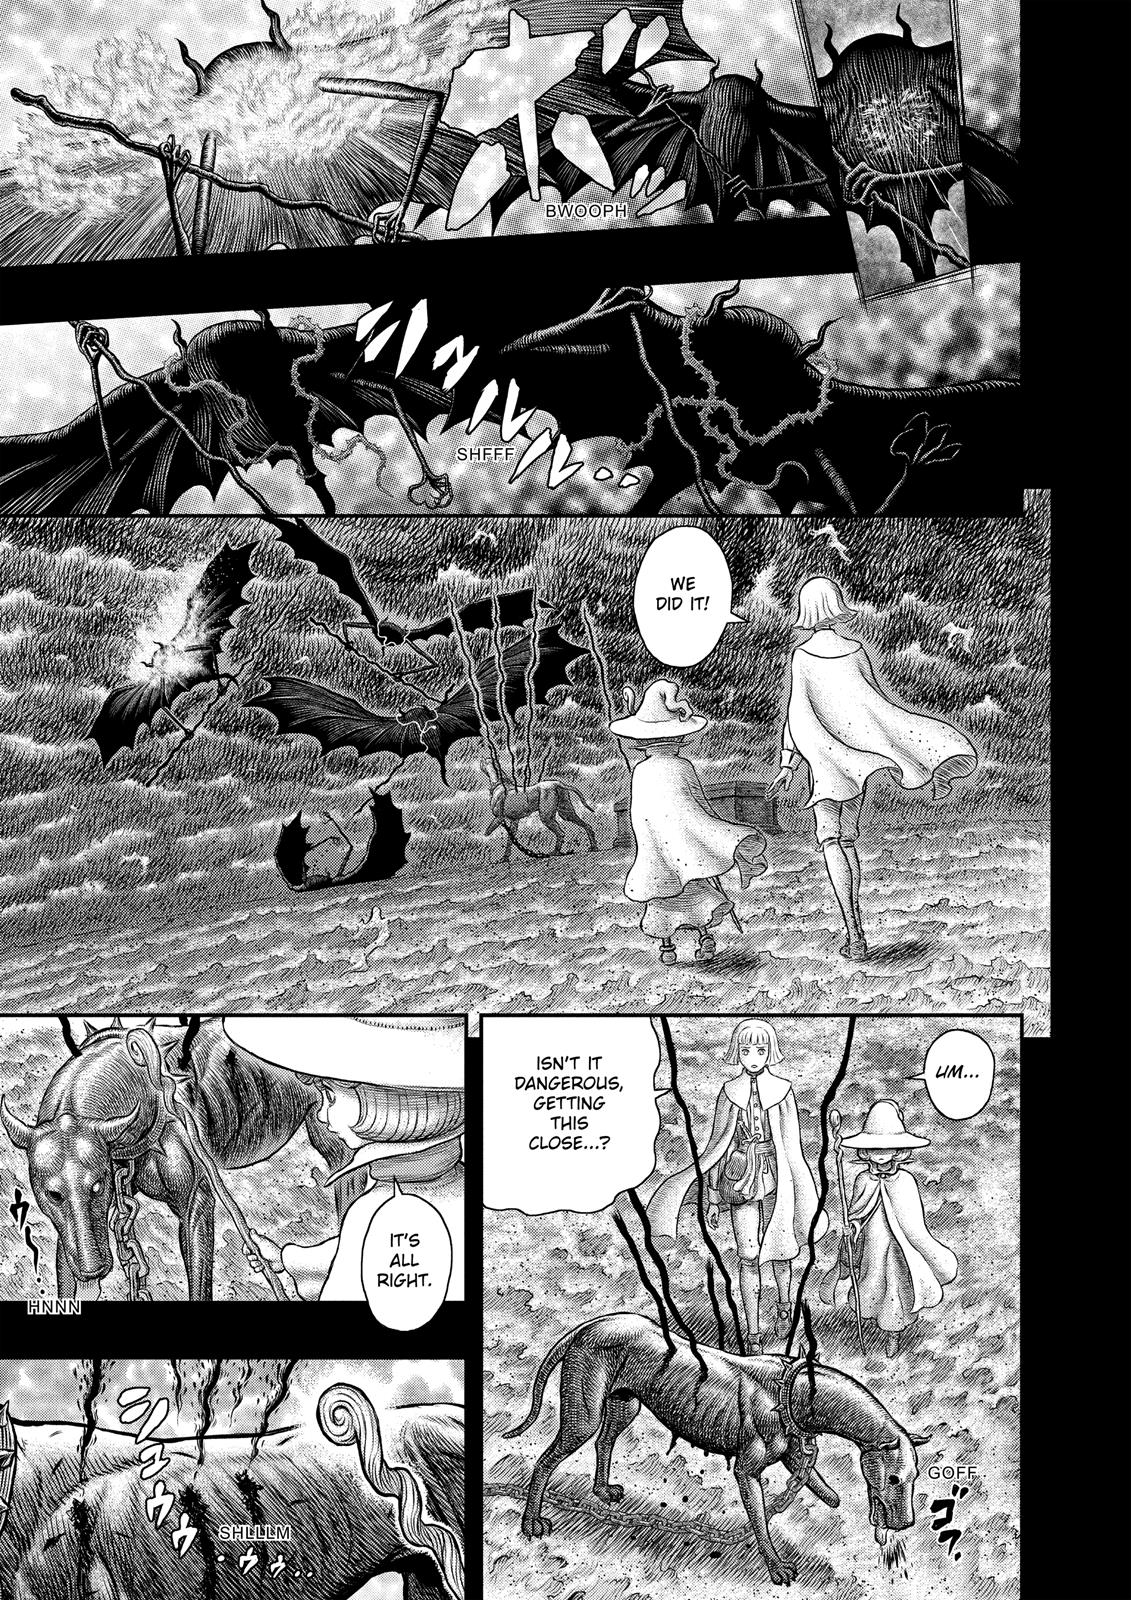 Berserk Manga Chapter 348 image 10